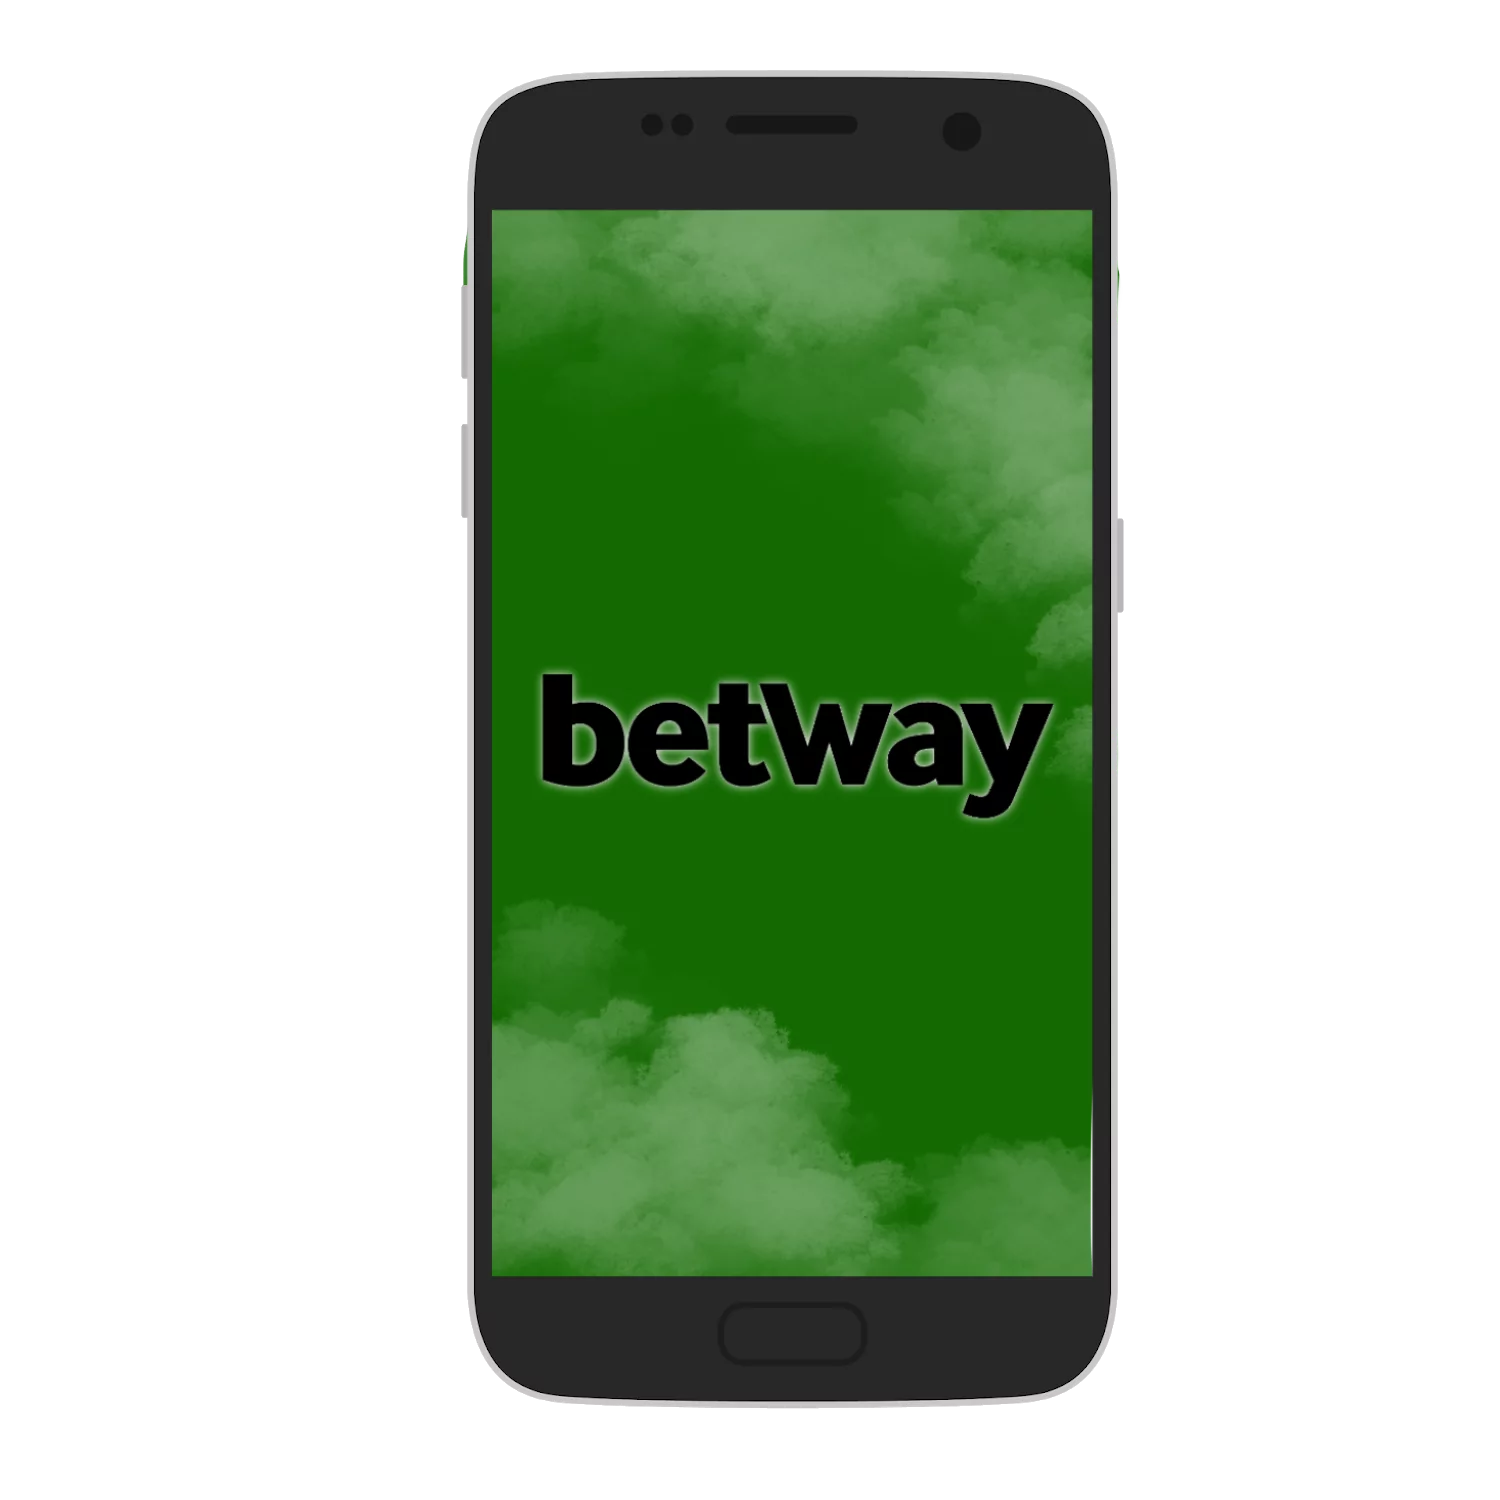 Betway मोबाइल ऐप को बेटिंग के लिए सबसे अच्छा मोबाइल सॉफ्ट माना जाता है।